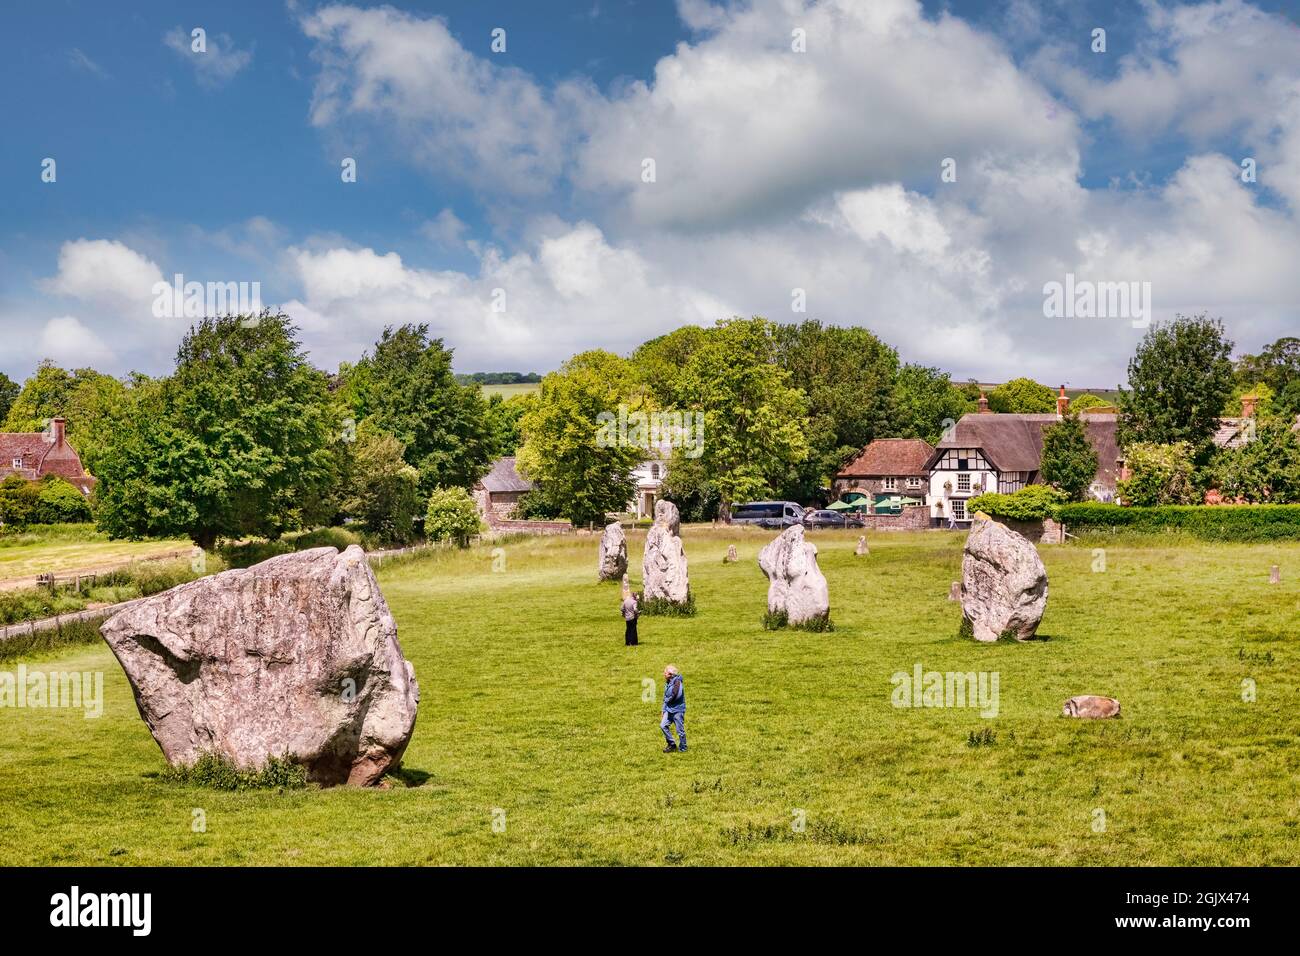 8 juin 2019 : Avebury, Wiltshire, Royaume-Uni - le cercle de pierres d'Avebury, et les touristes marchant parmi les mégalithes, avec le village d'Avebury dans le fond. Banque D'Images